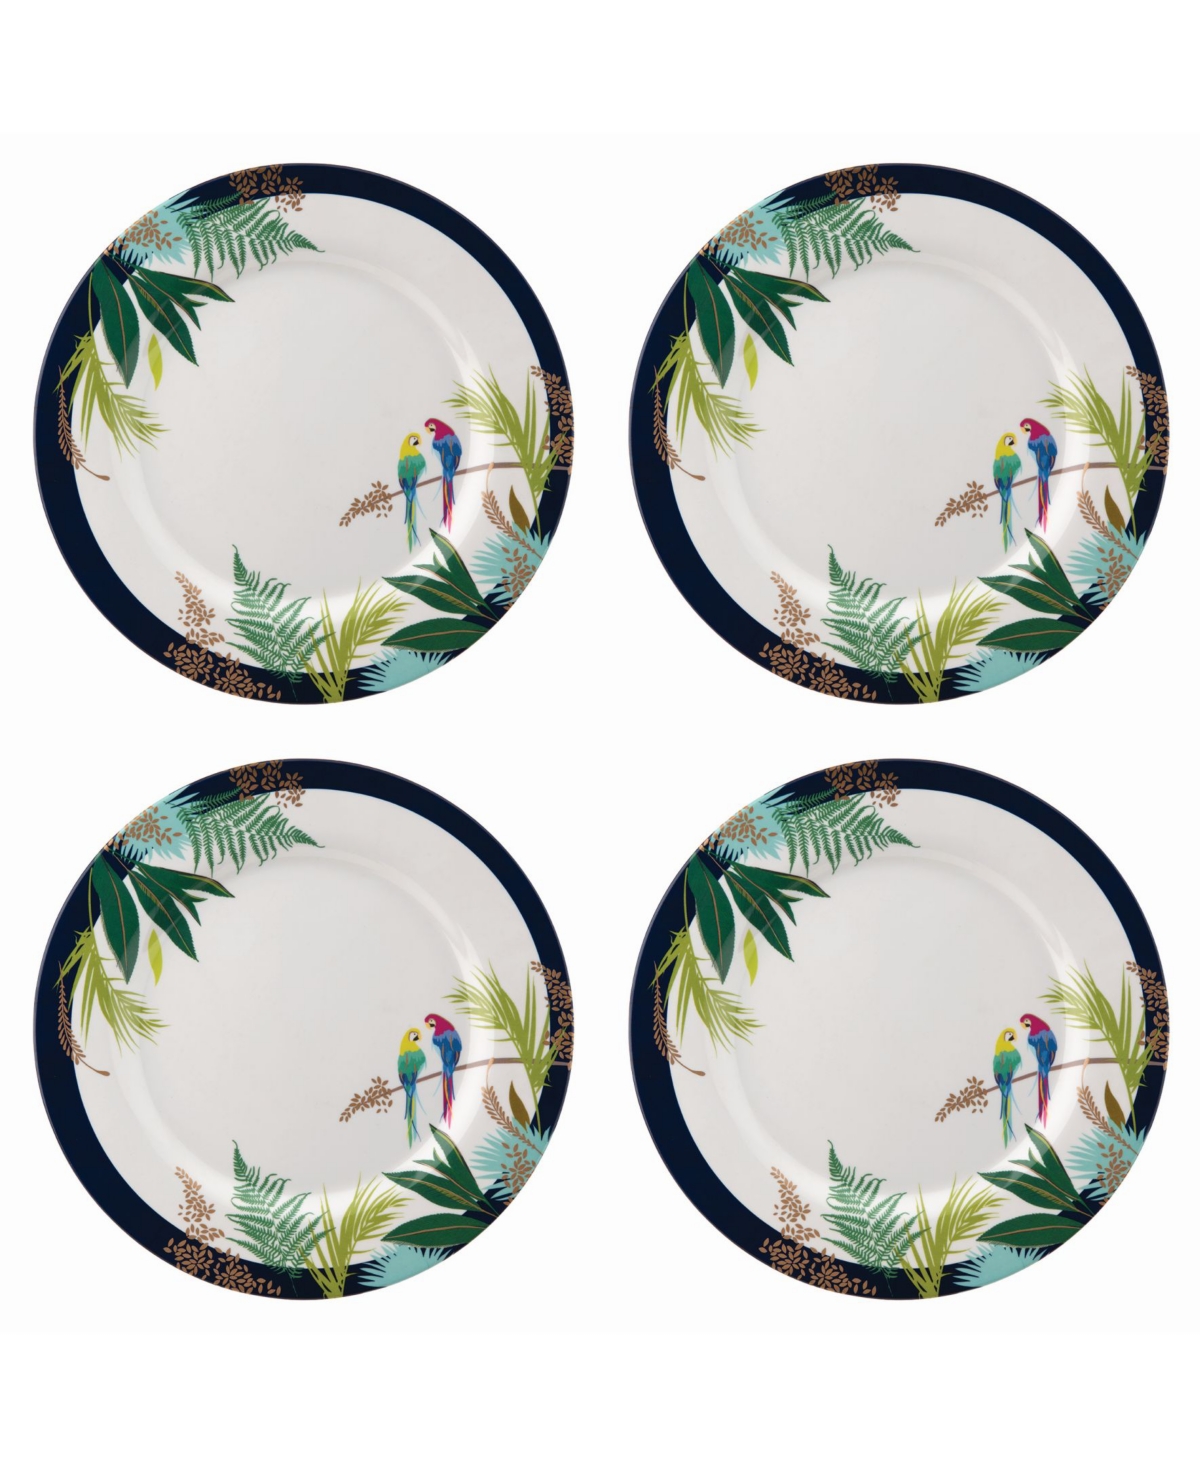 Sara Miller Parrot Dinner Plate, Set of 4 - White